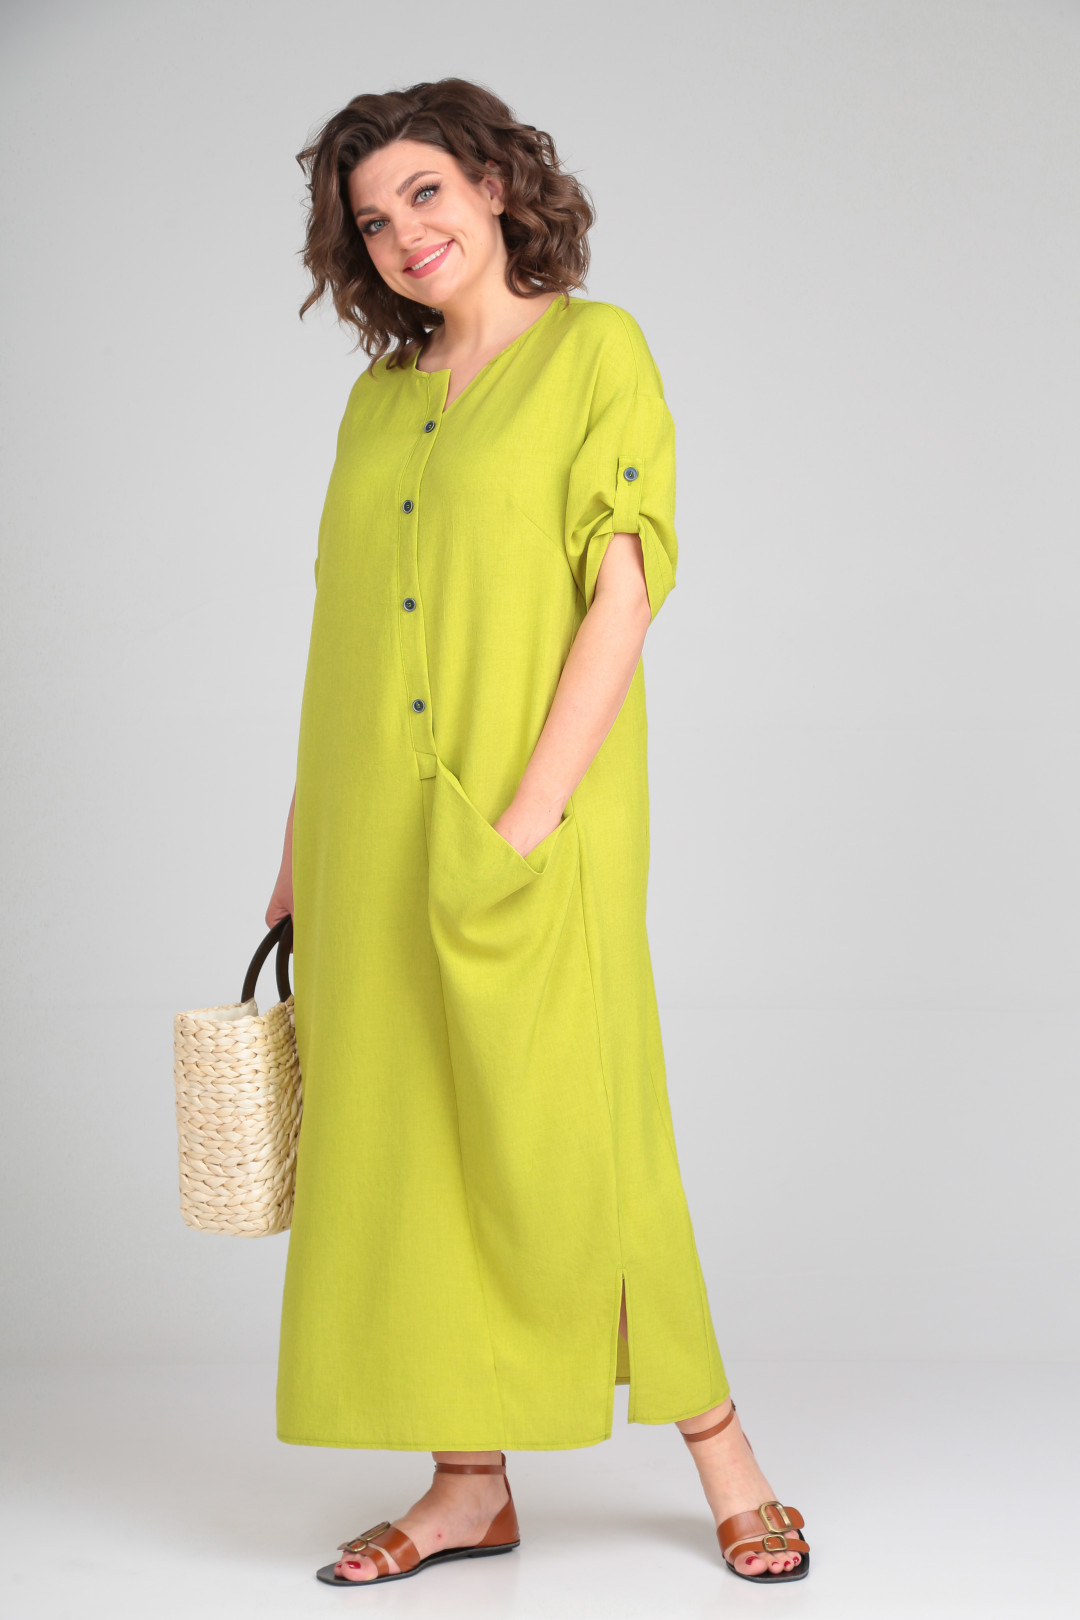 Платье Мишель Шик 2094/3 лаймовый (желто-зеленый)